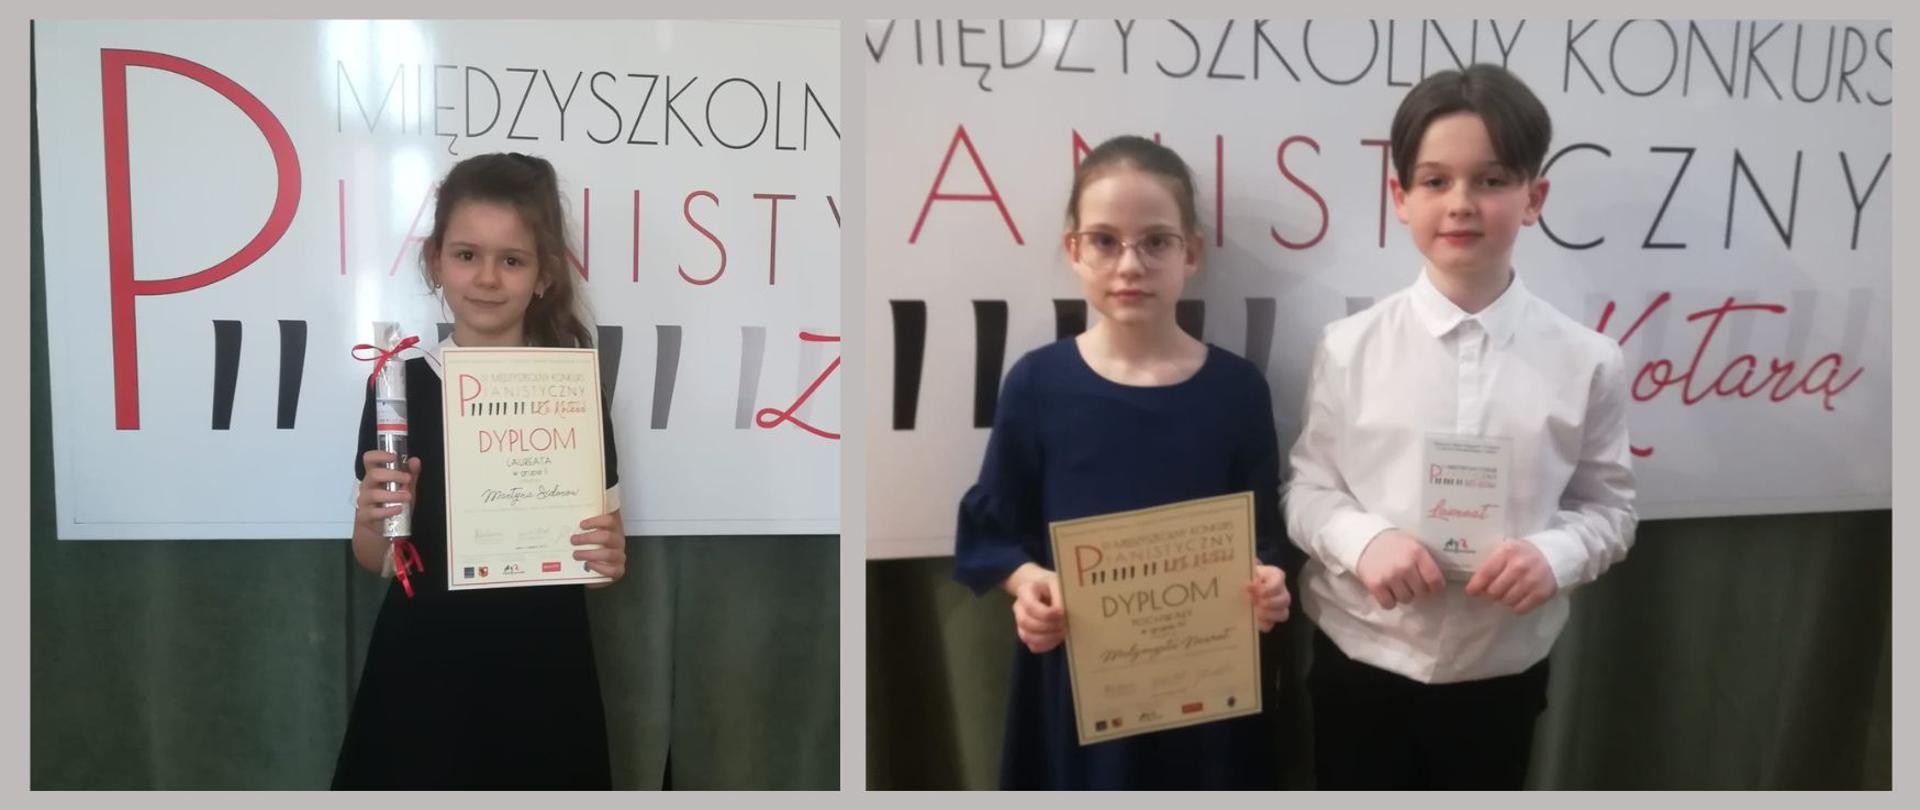 Uczniowie z dyplomami i nagrodami na tle banneru Międzyszkolnego Konkursu Pianistycznego "Za Kotarą" w Lesznie.